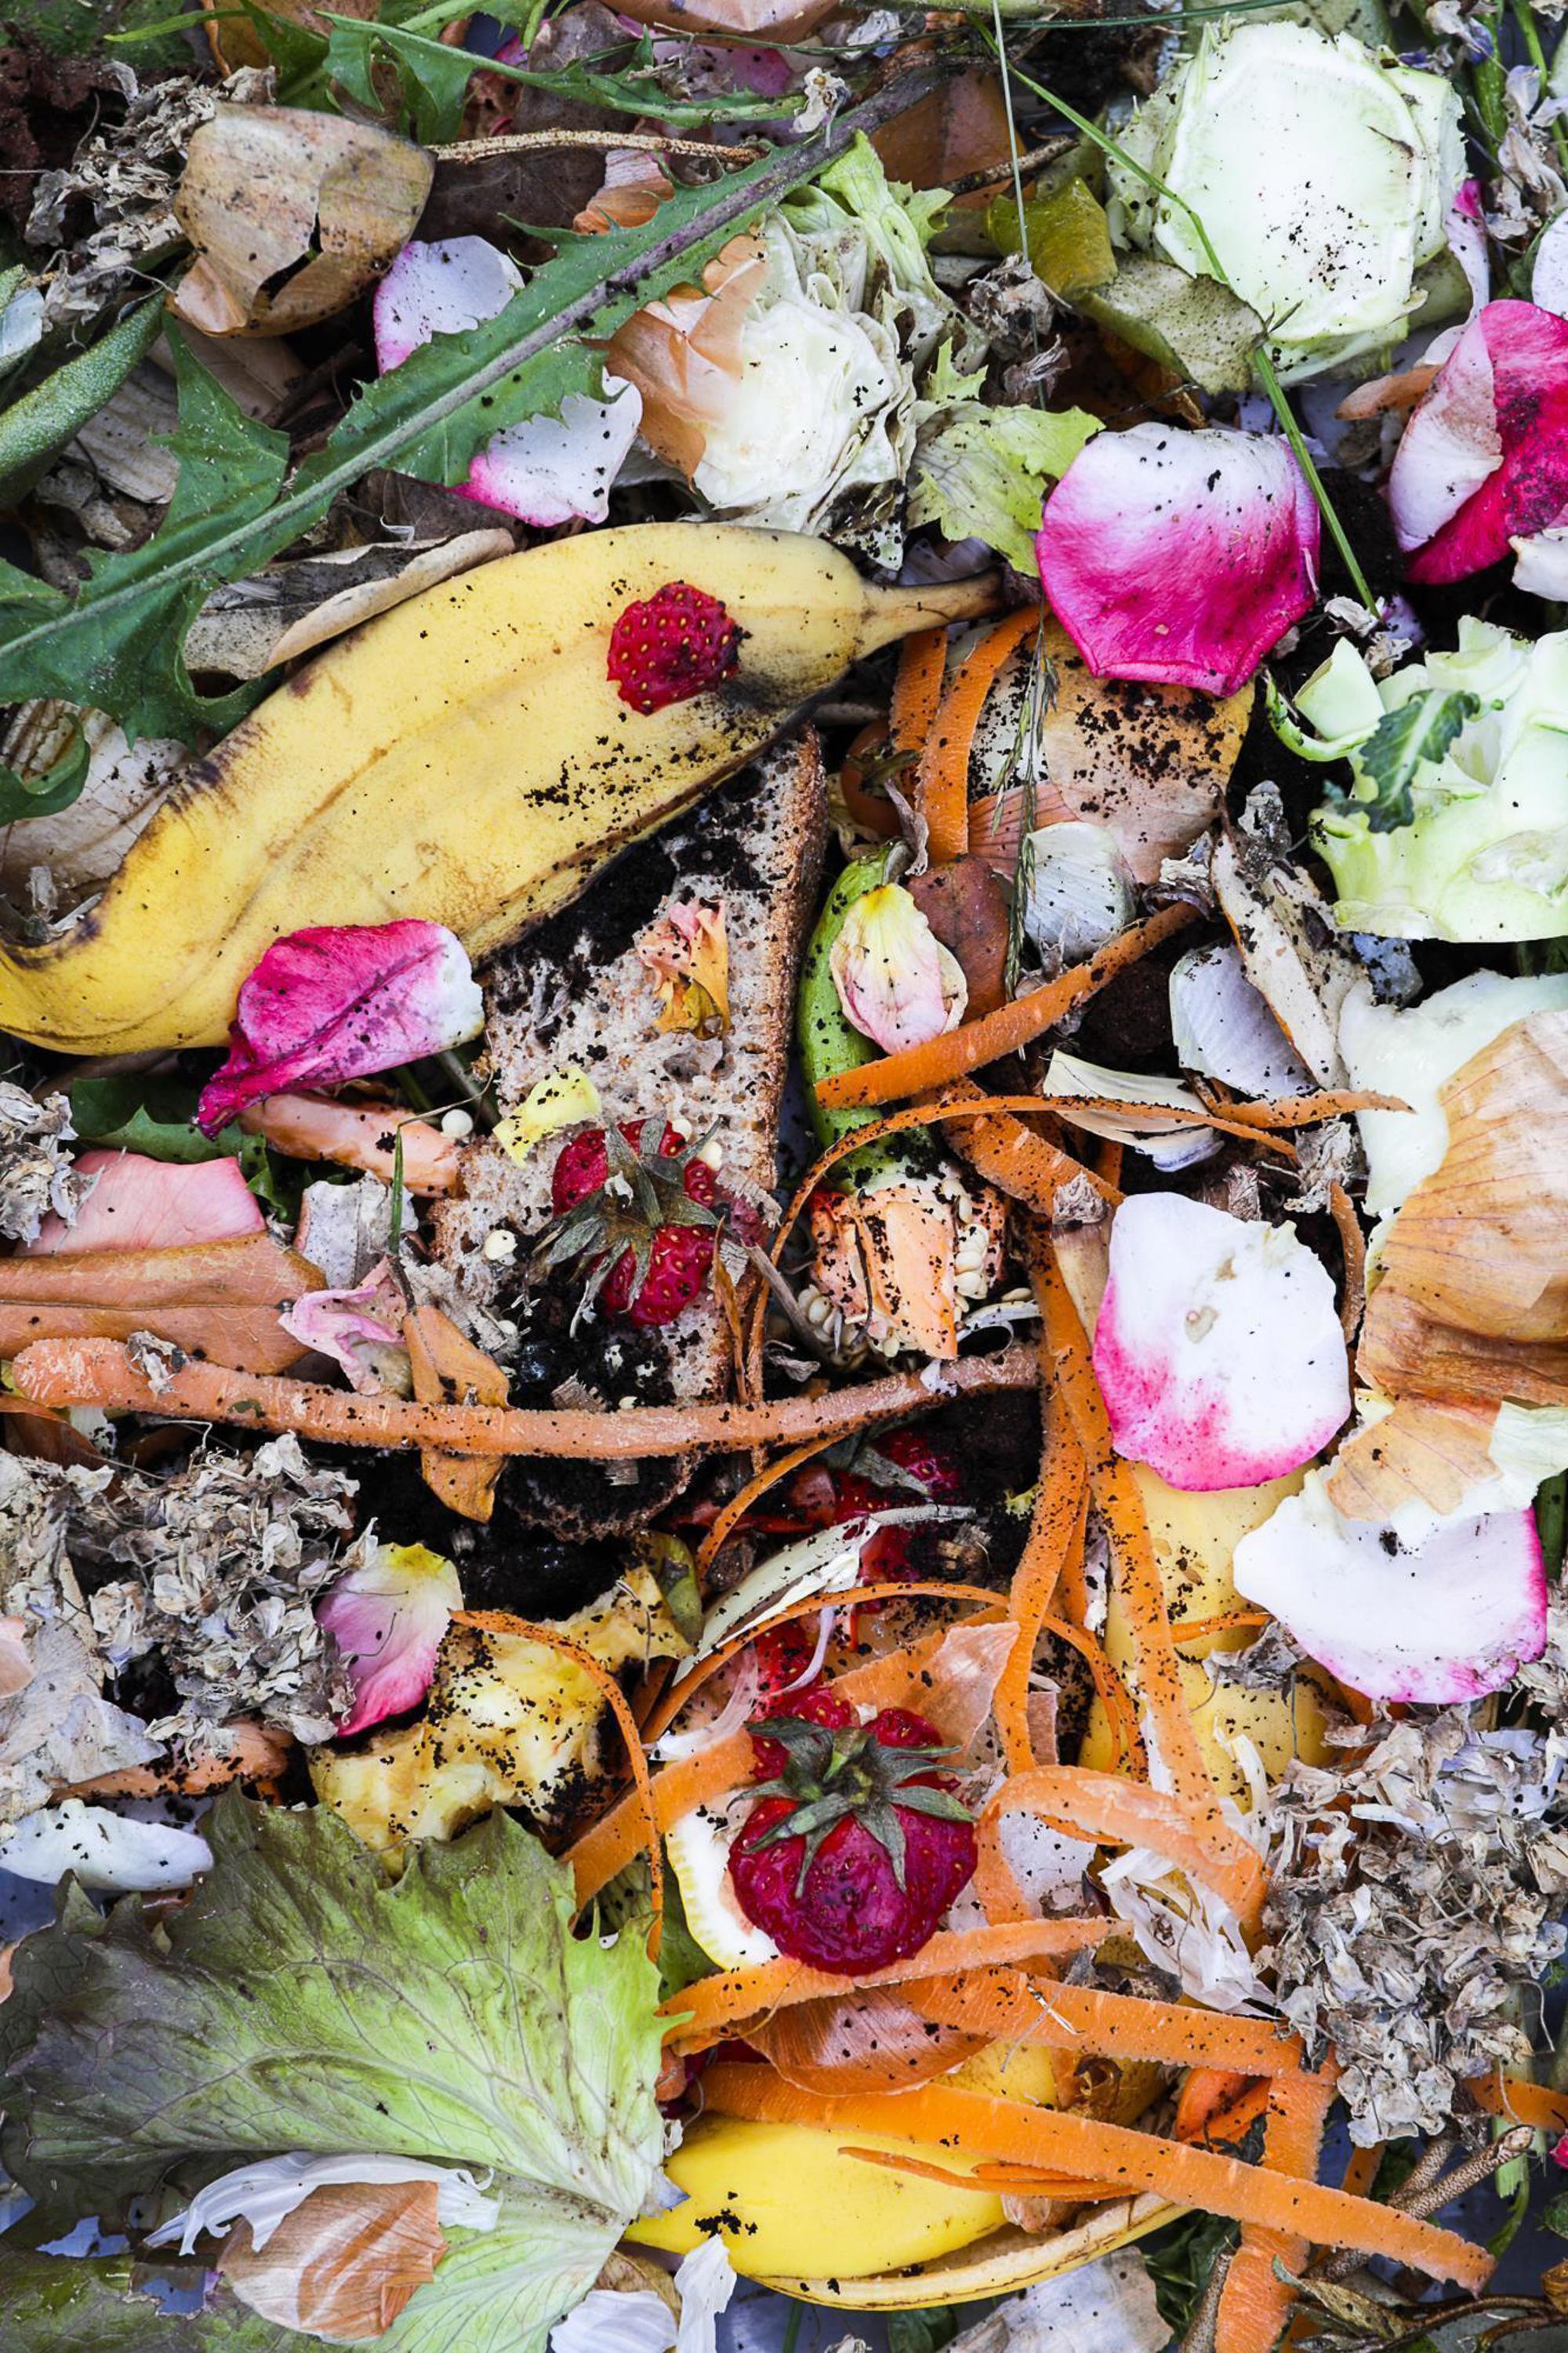 Bioriozon in Bergen op Zoom makes raw materials from reusable waste